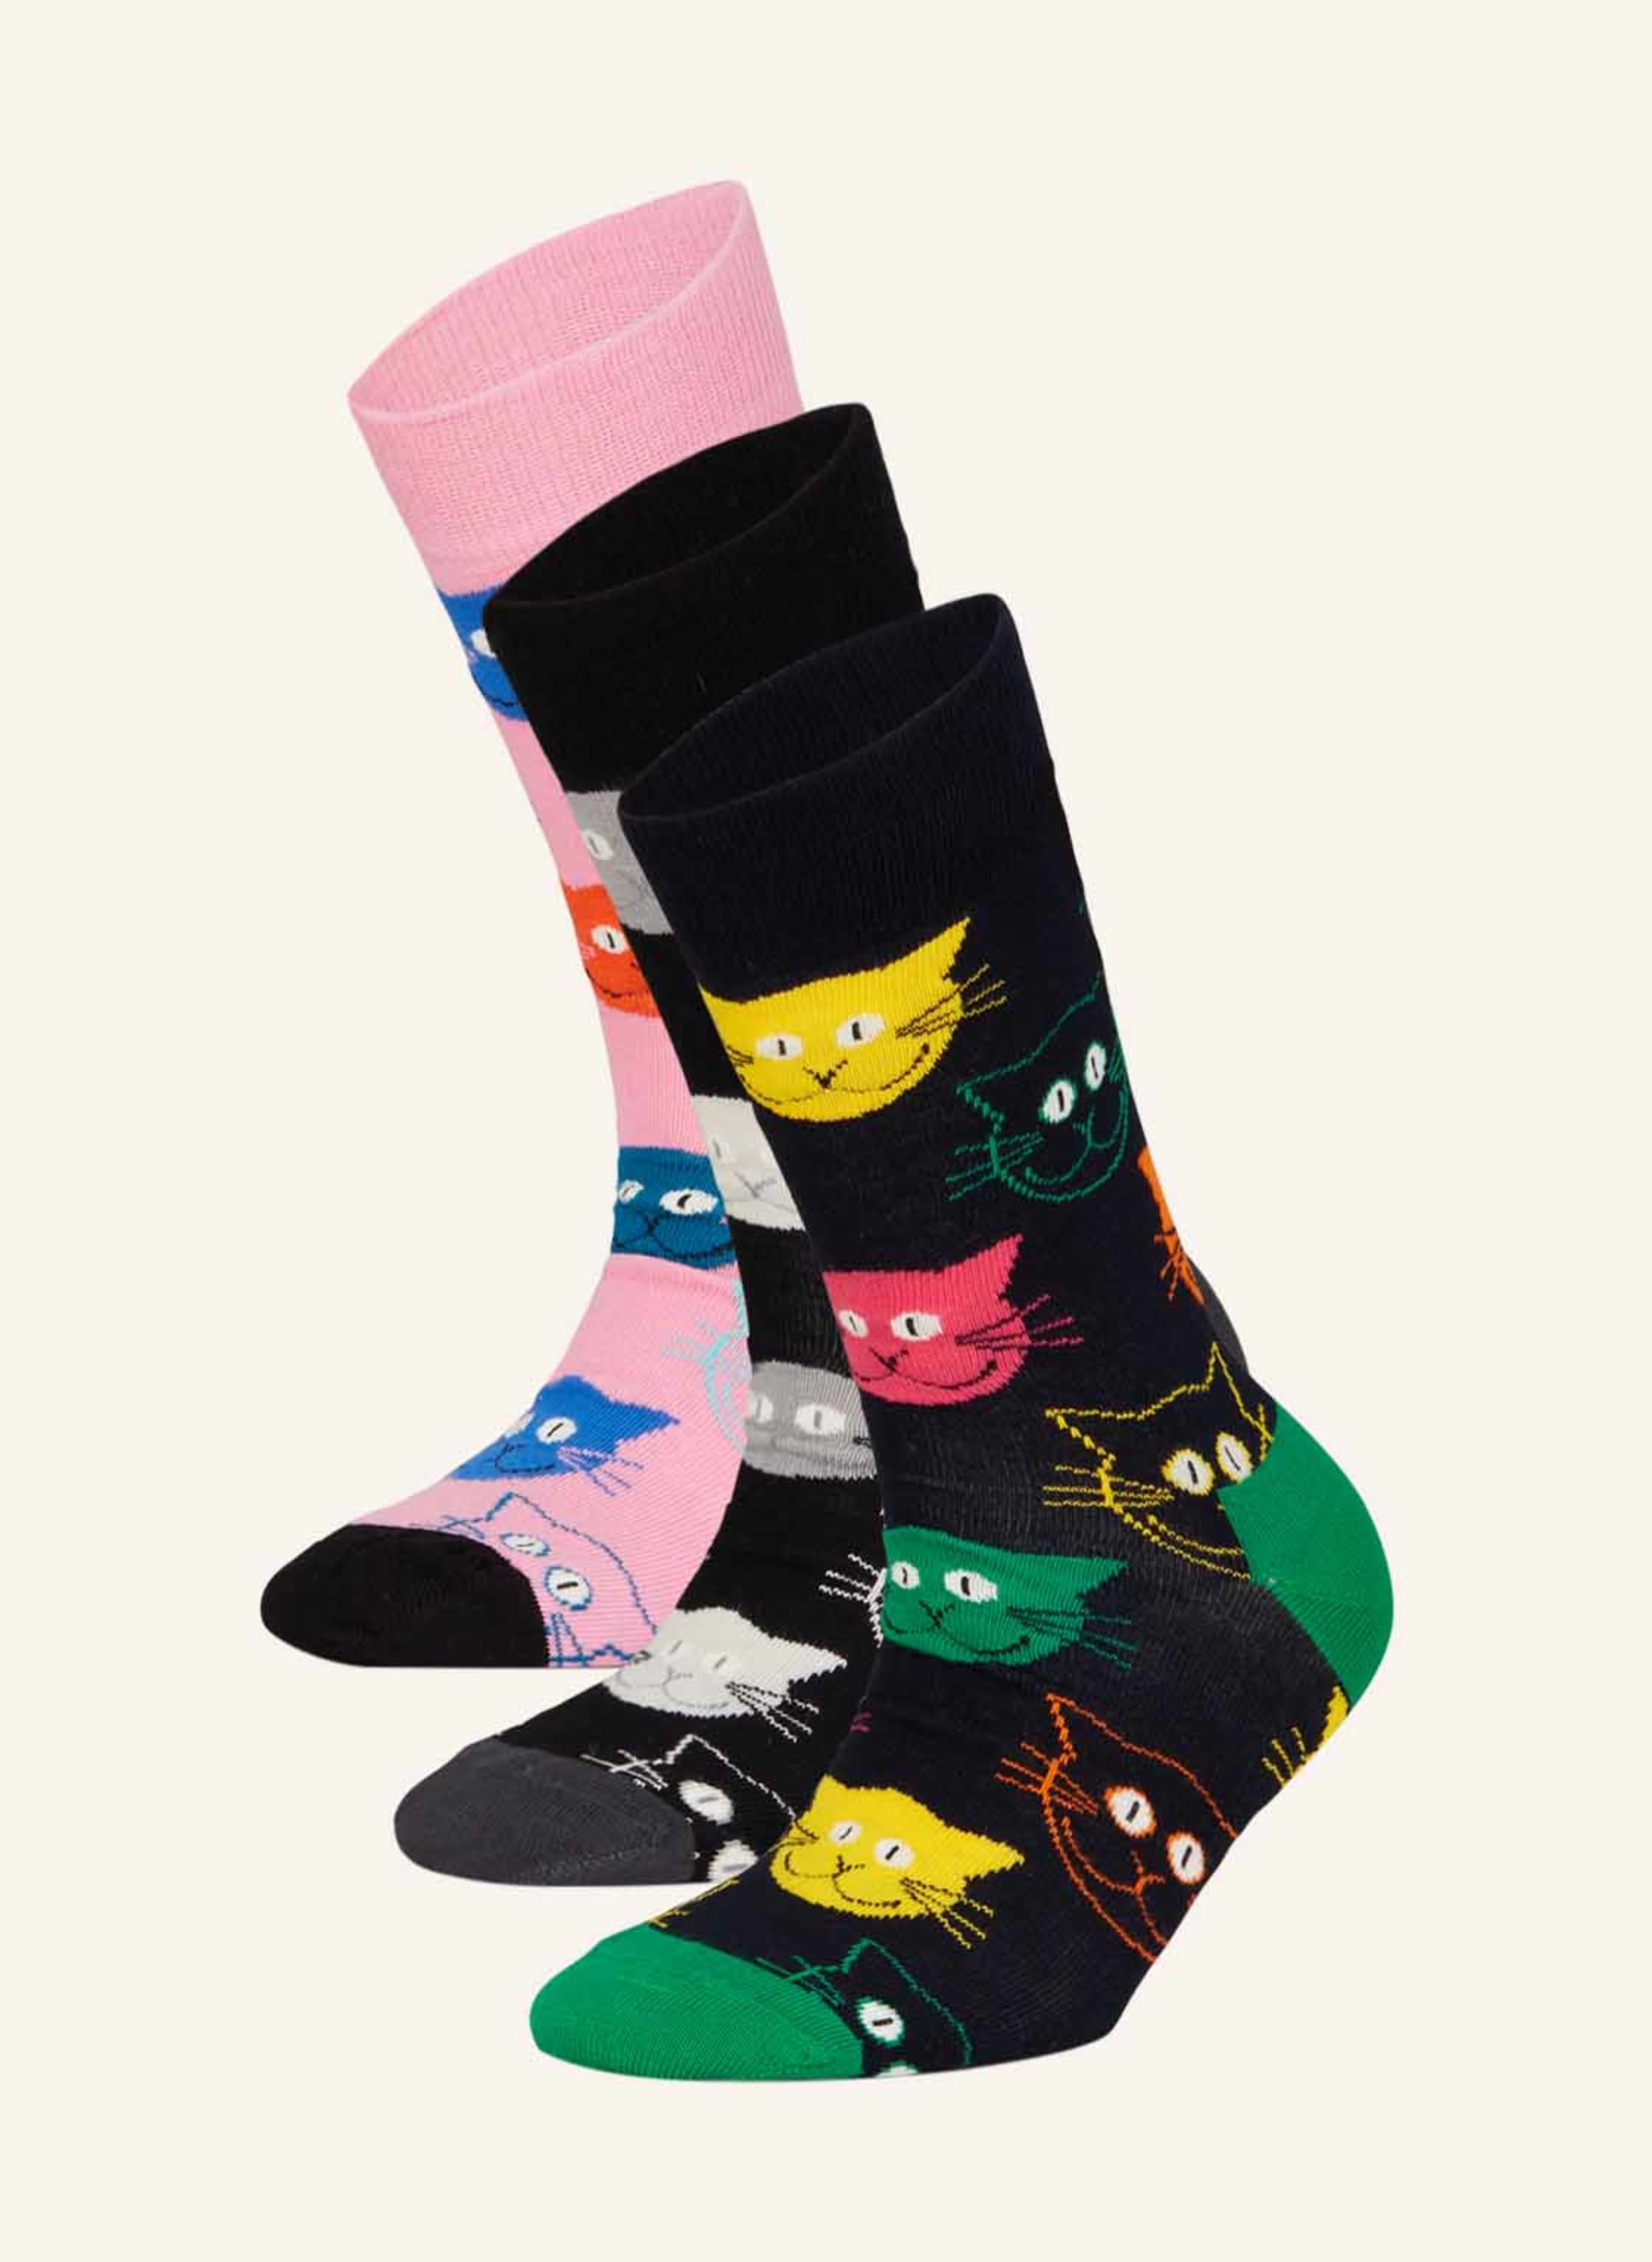 Happy Socks 3-pack socks gift orange in box with CAT black/ pink